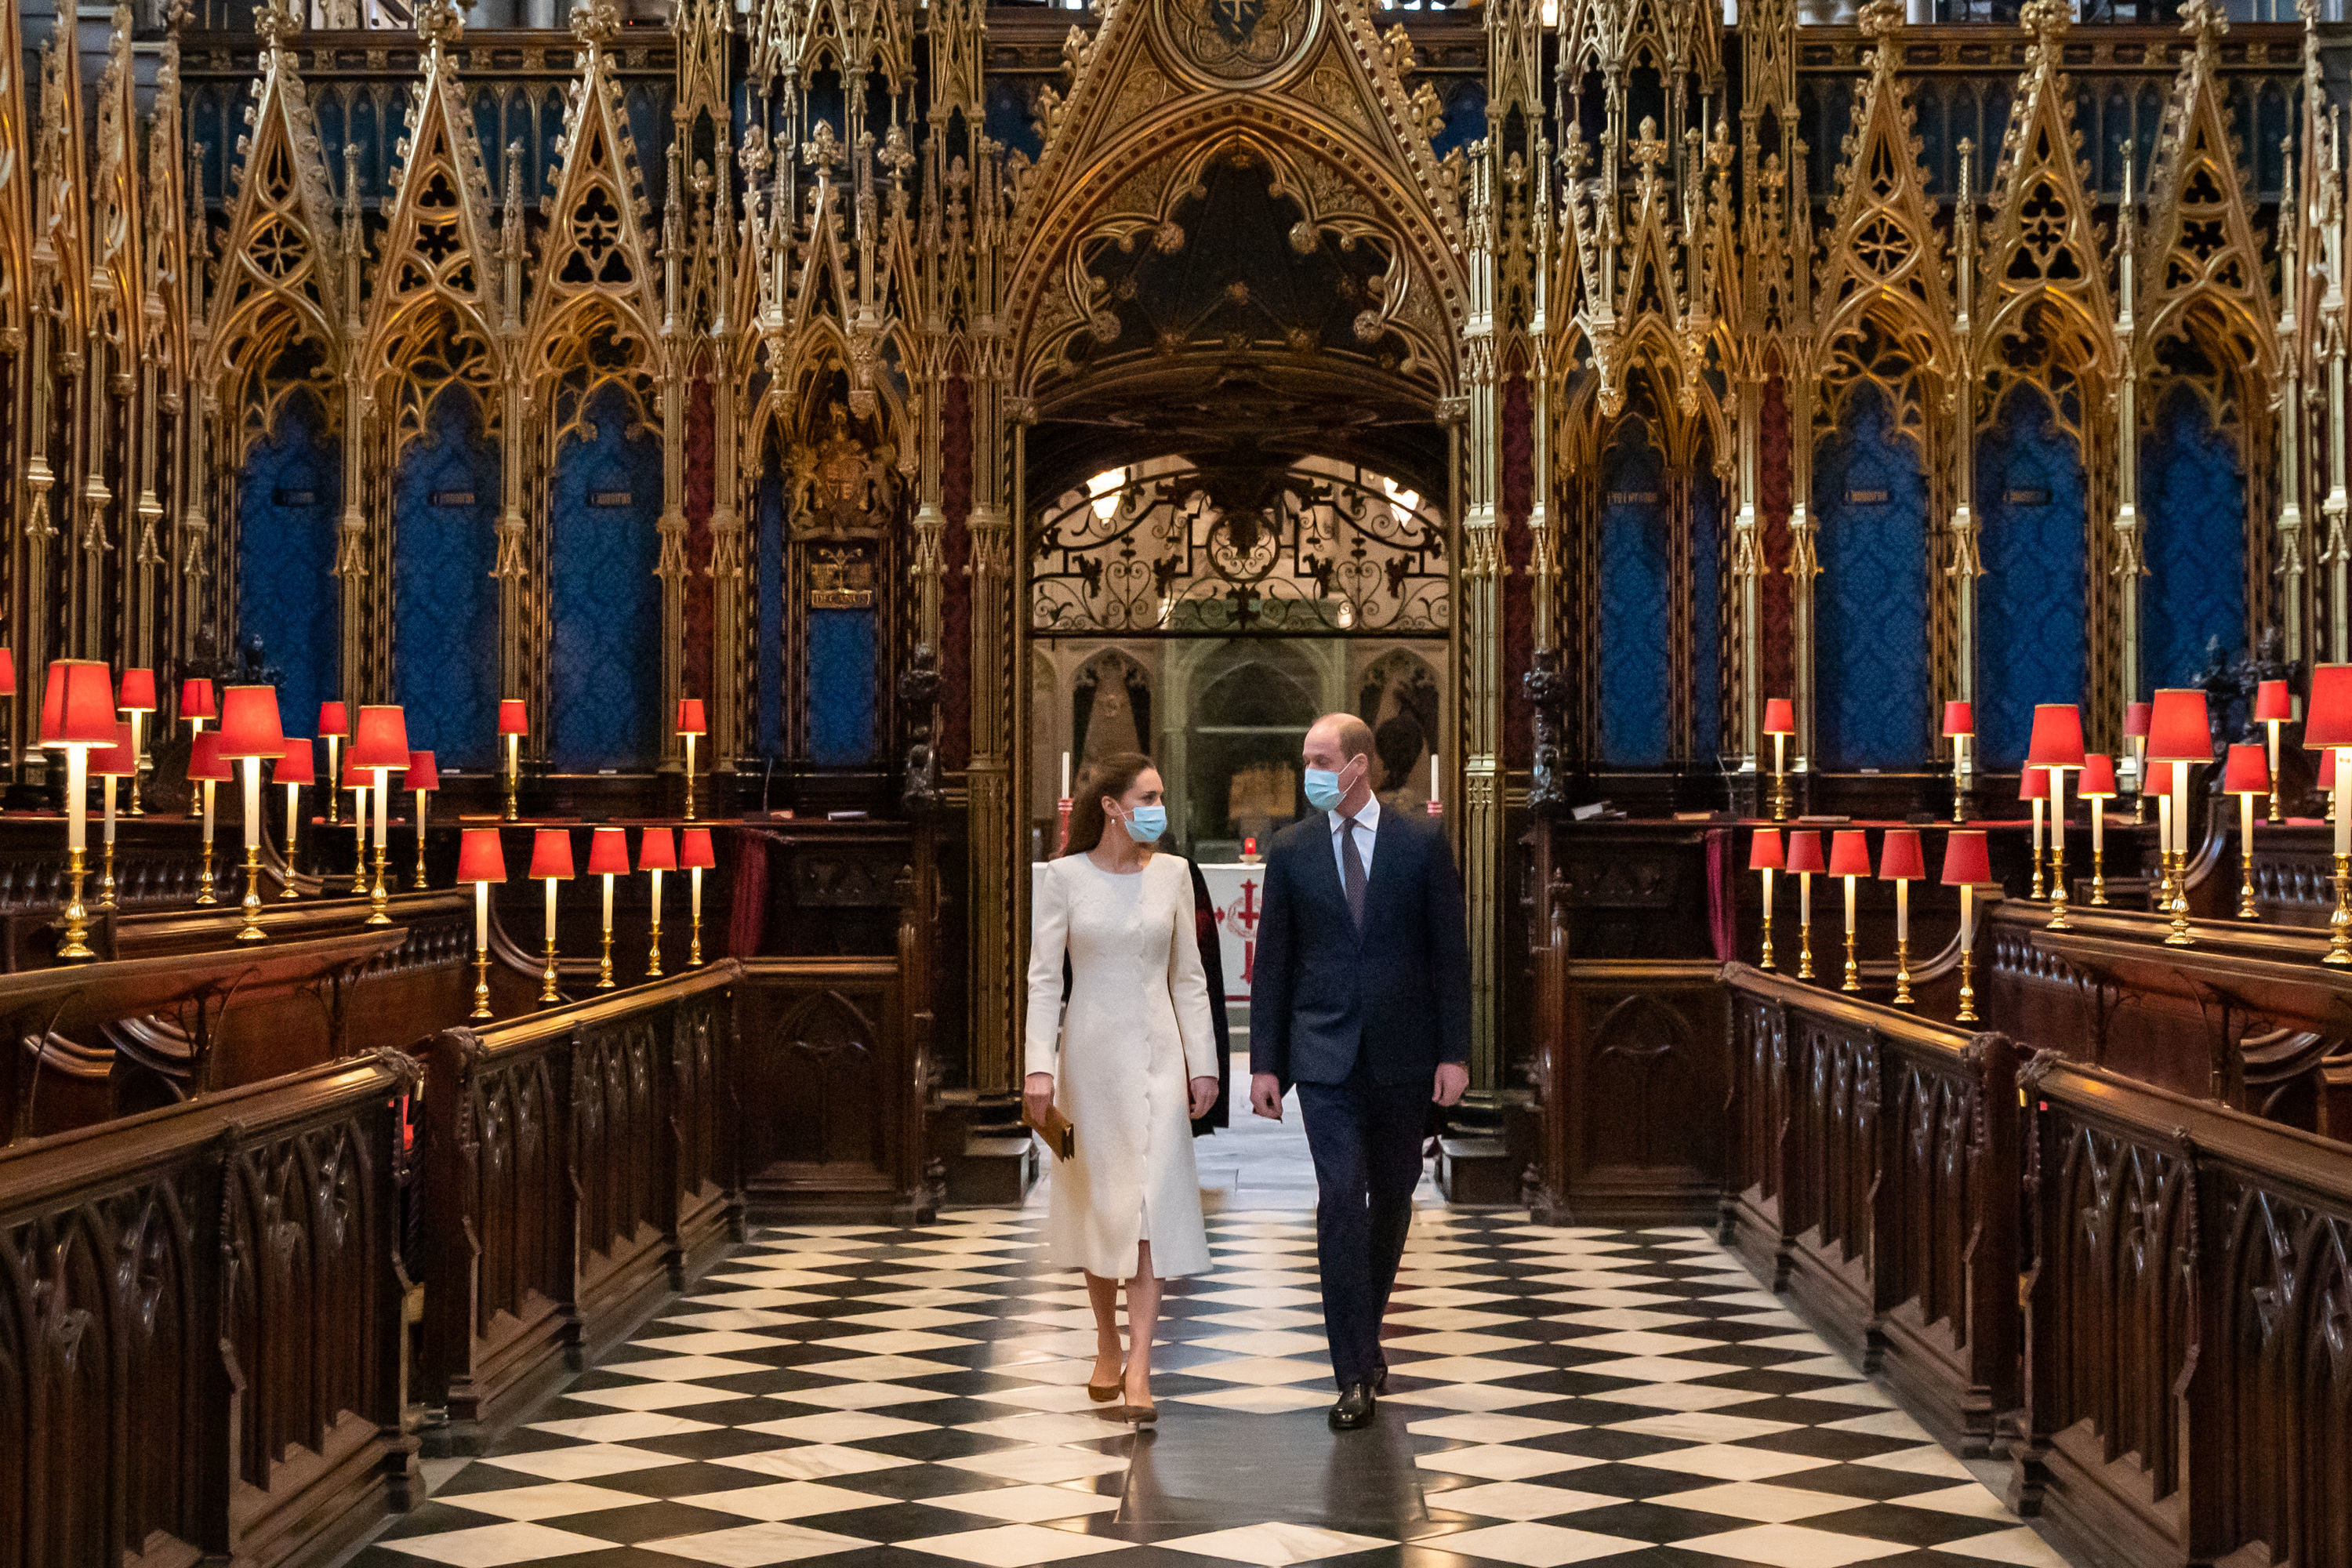 Кейт выходит замуж. Вестминстерское аббатство свадьба Кейт. Свадьба Кейт Миддлтон и принца Уильяма в Вестминстерском аббатстве. Кейт в Вестминстерском аббатстве. Свадьба Уильяма и Кейт Миддлтон в Вестминстерском аббатстве.